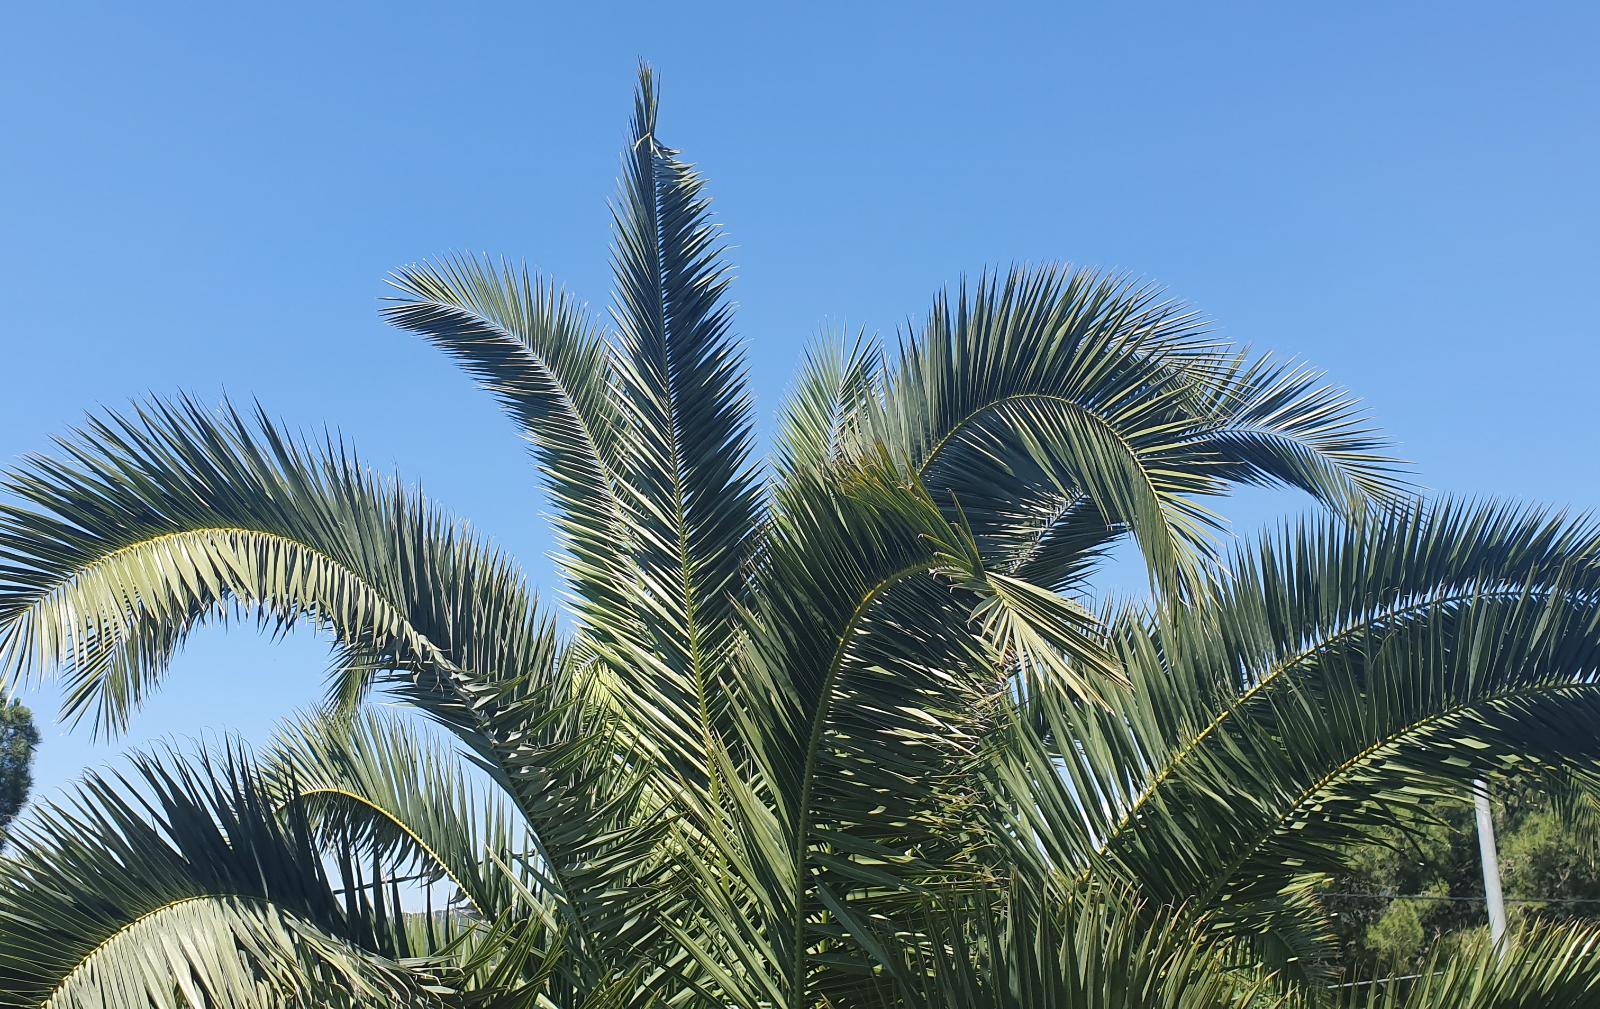 Tractament fitosanitari per la plaga del morrut de les palmeres